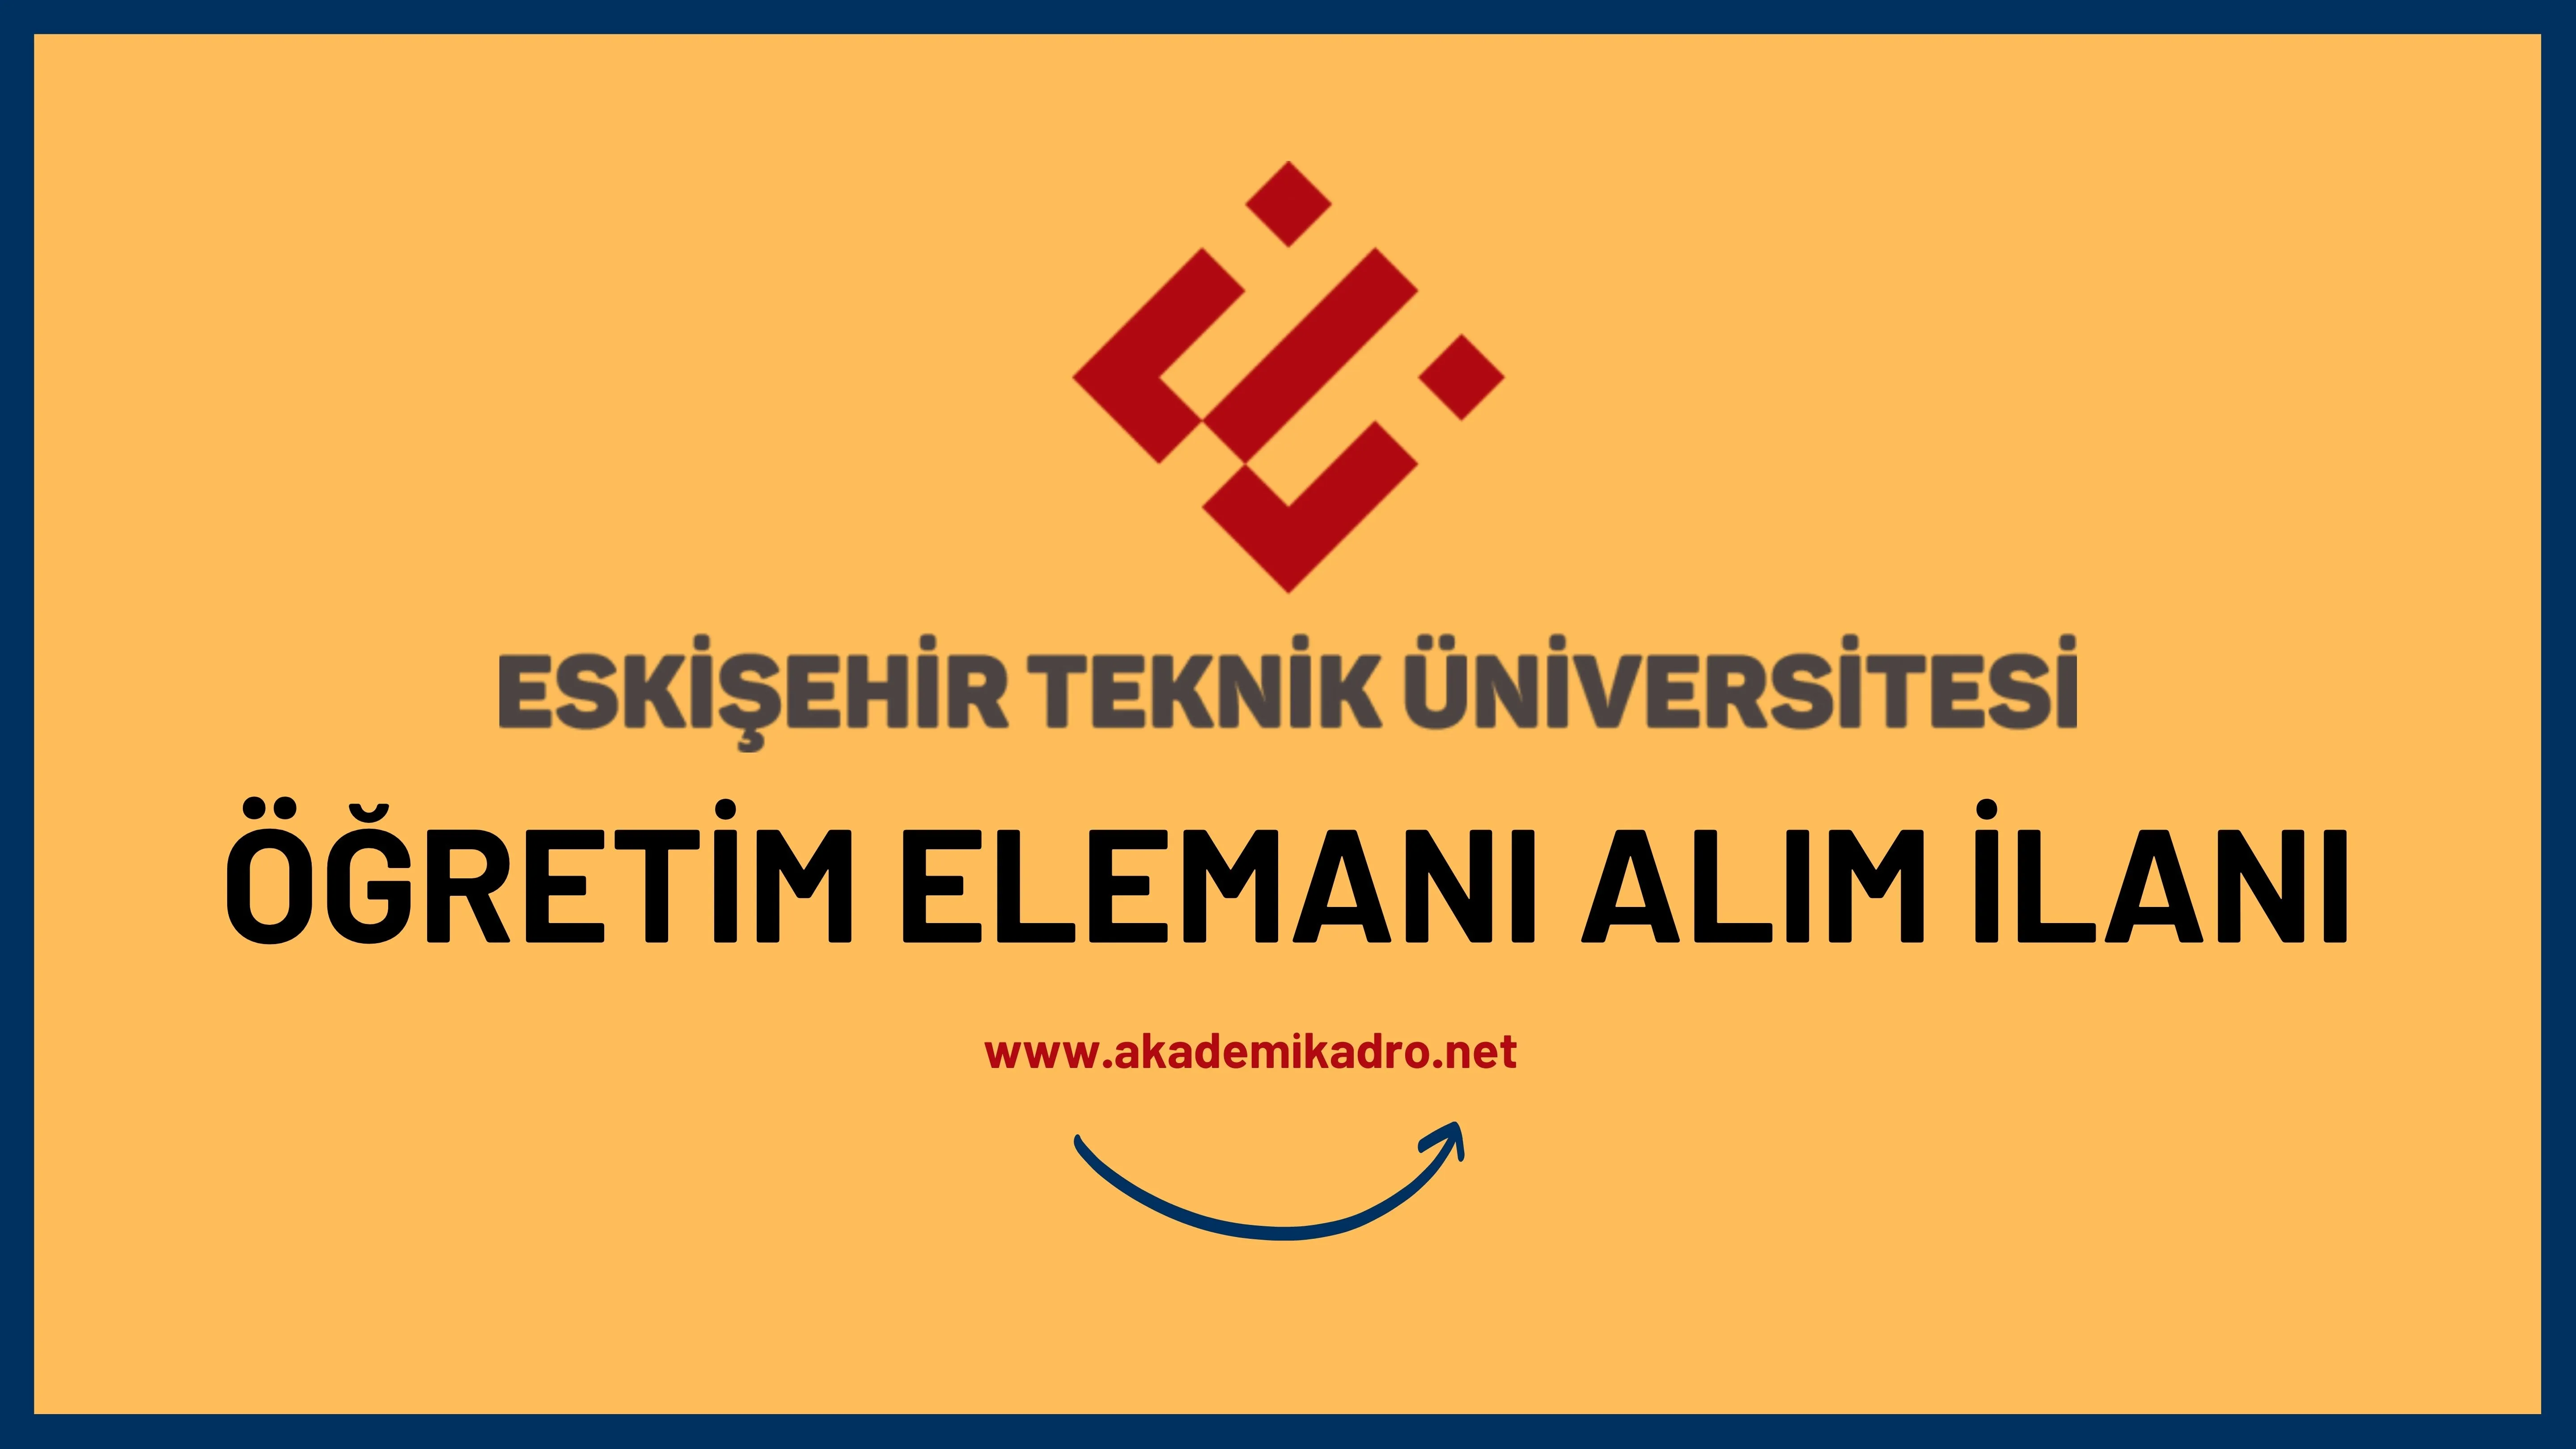 Eskişehir Osmangazi Üniversitesi 6 Araştırma görevlisi ve 4 öğretim görevlisi alacaktır.